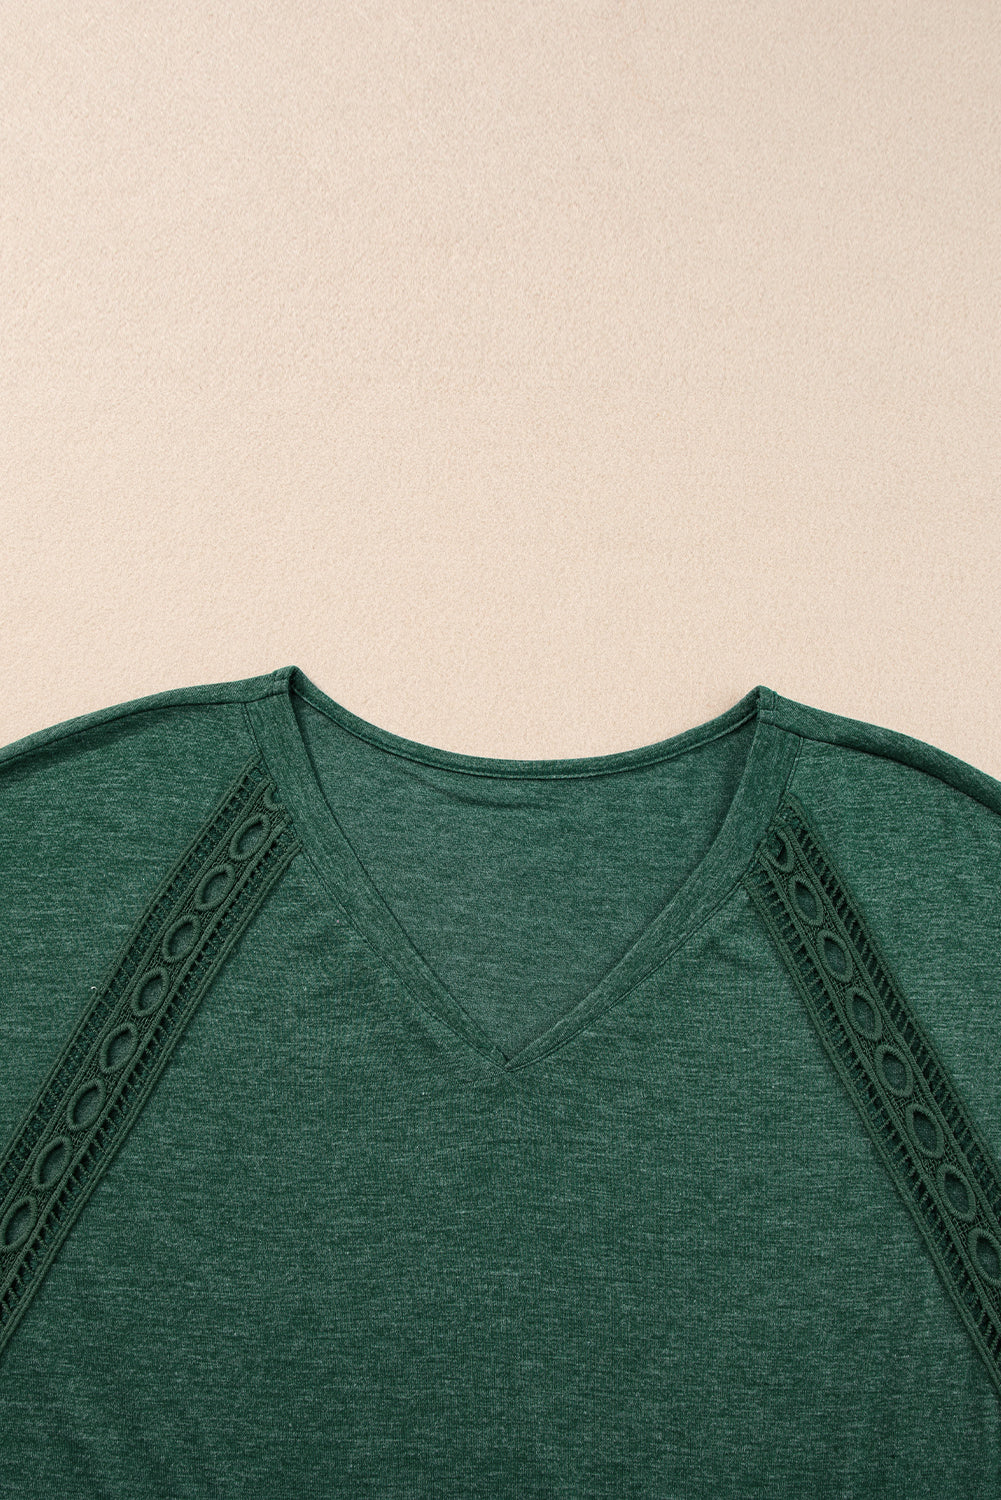 T-shirt surdimensionné vert noirâtre avec détails en dentelle au crochet